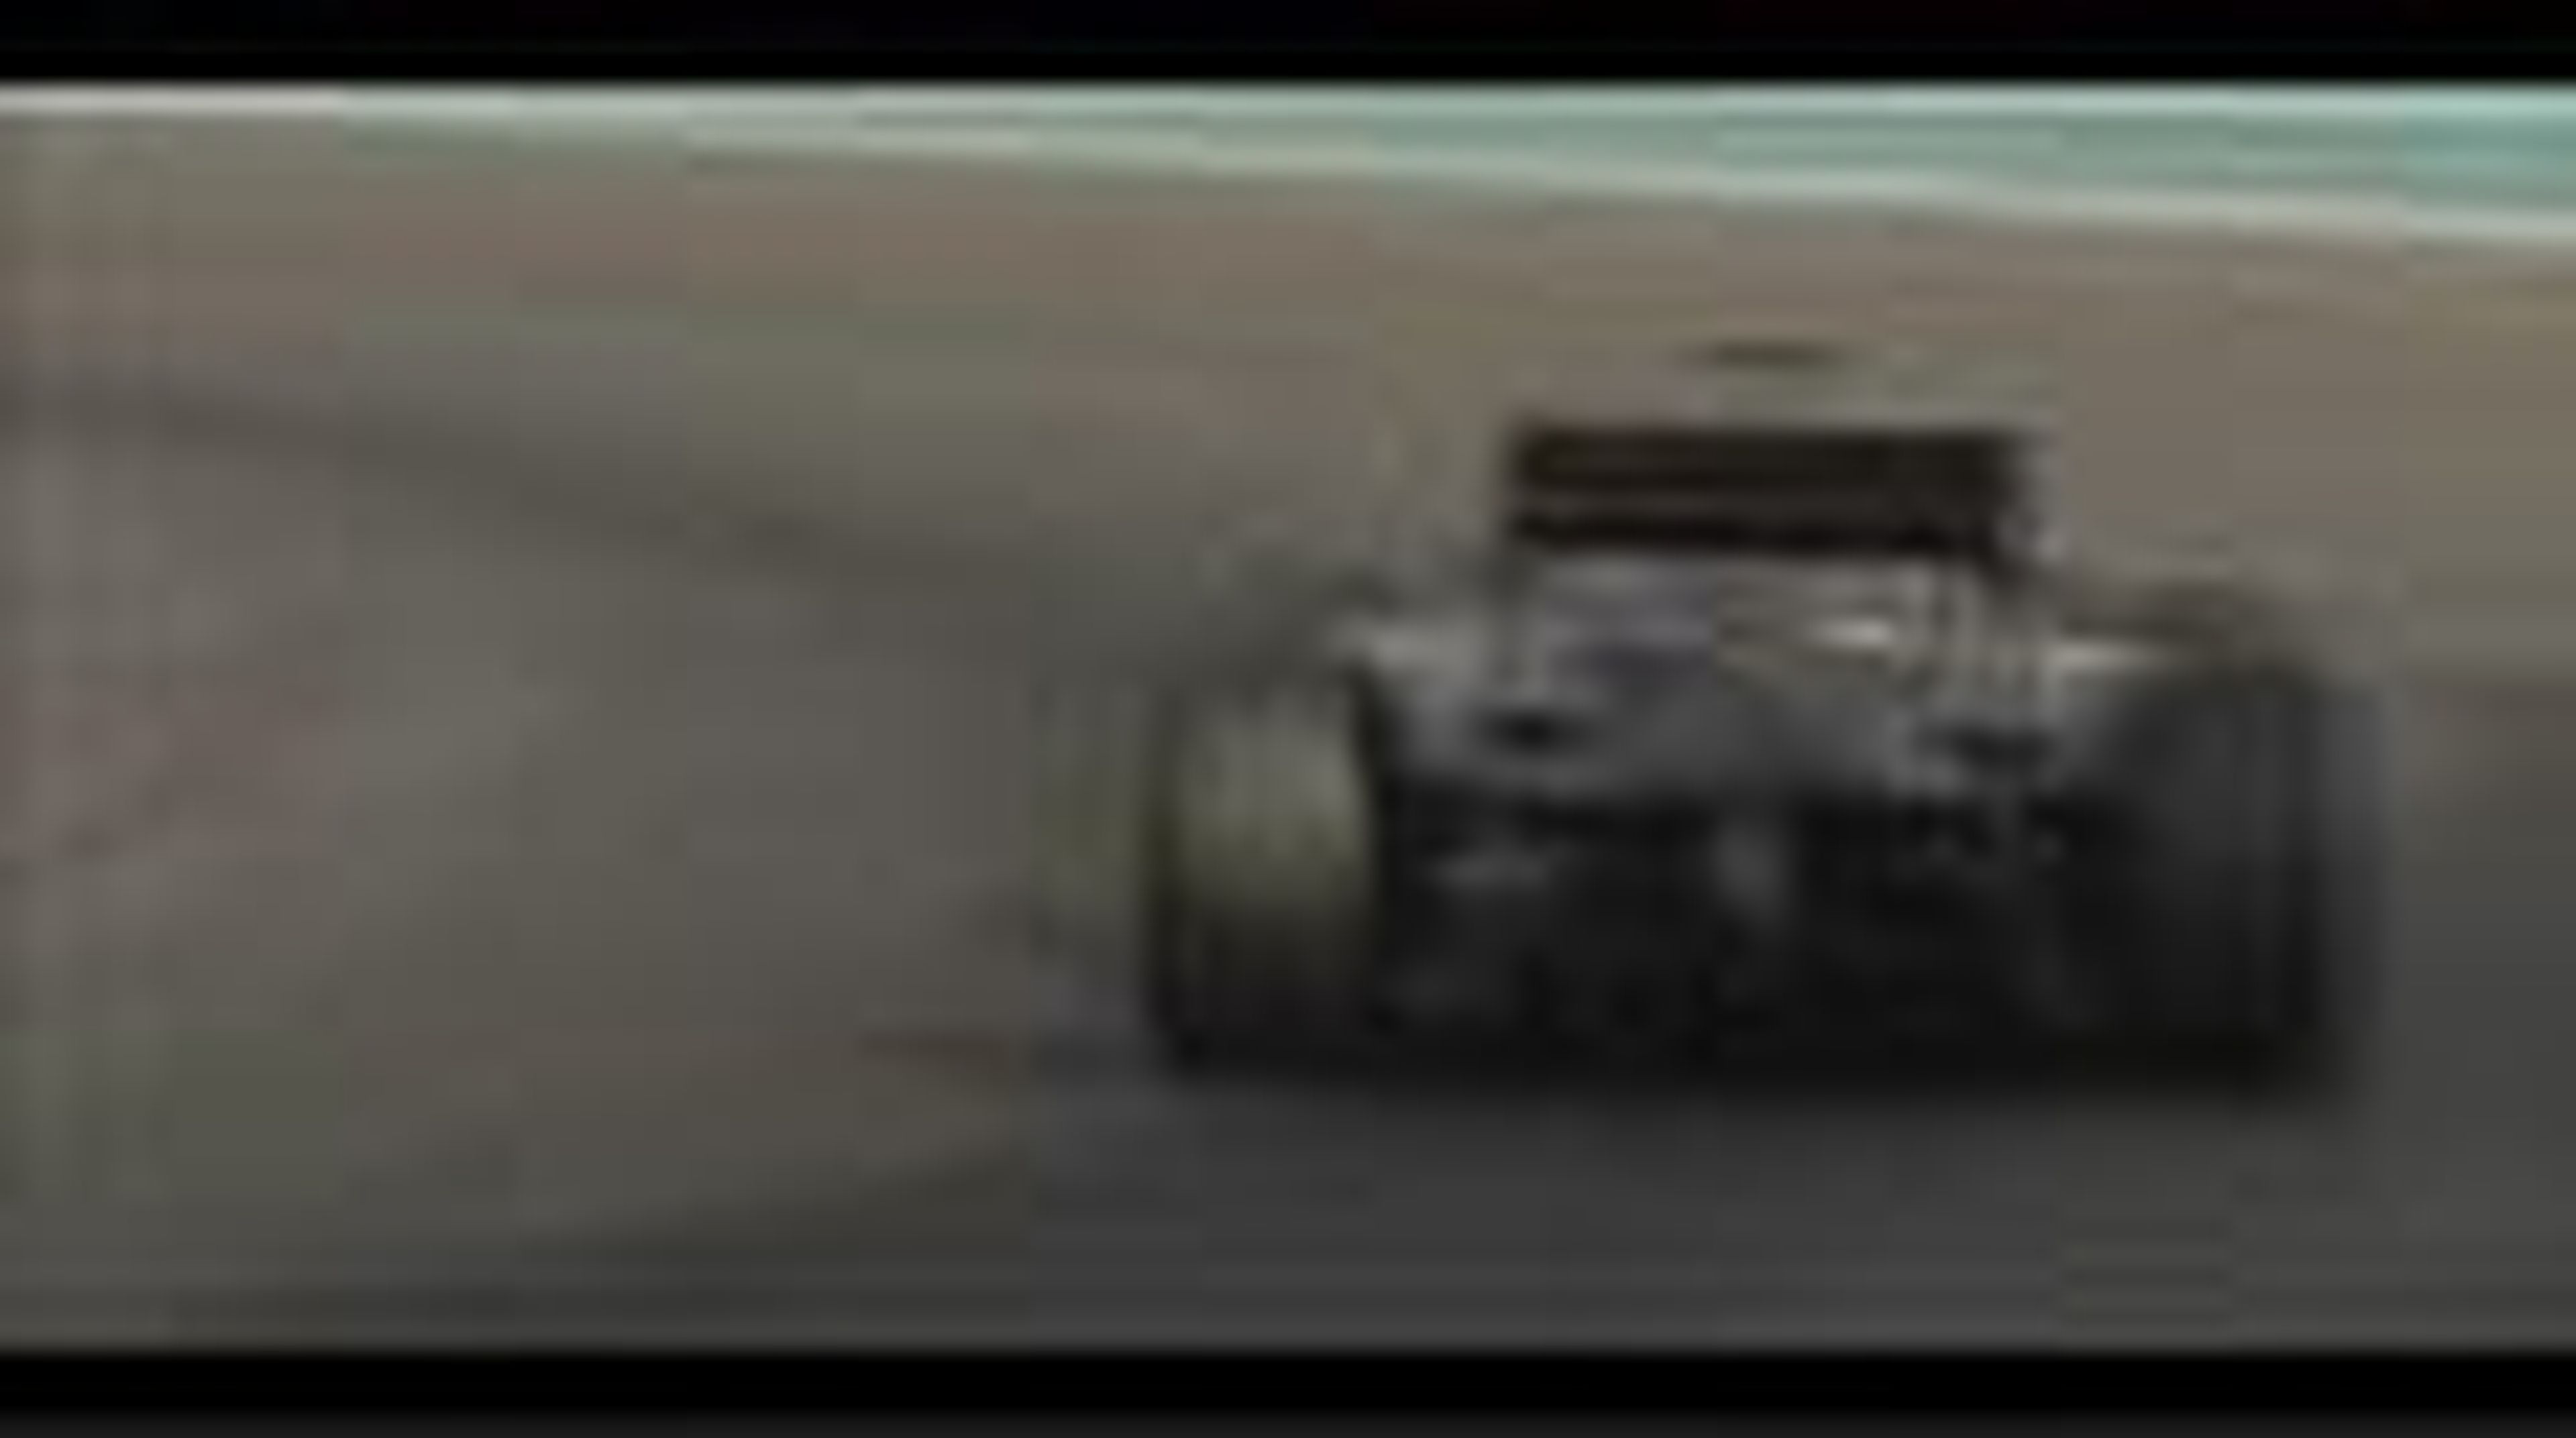 Test de Pirelli en Abu Dhabi